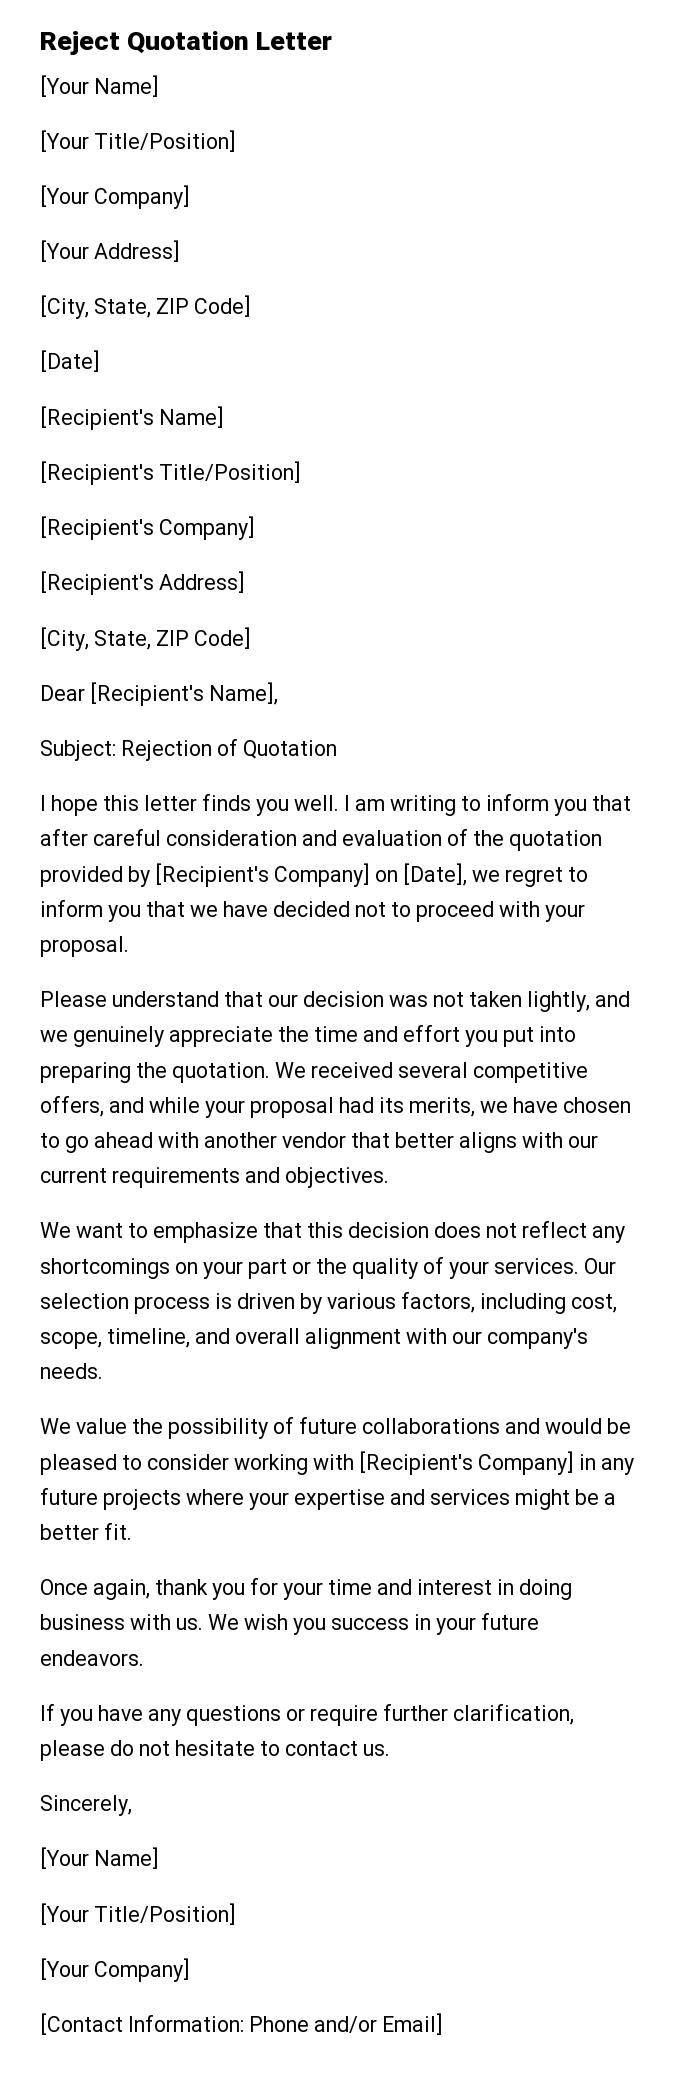 Reject Quotation Letter